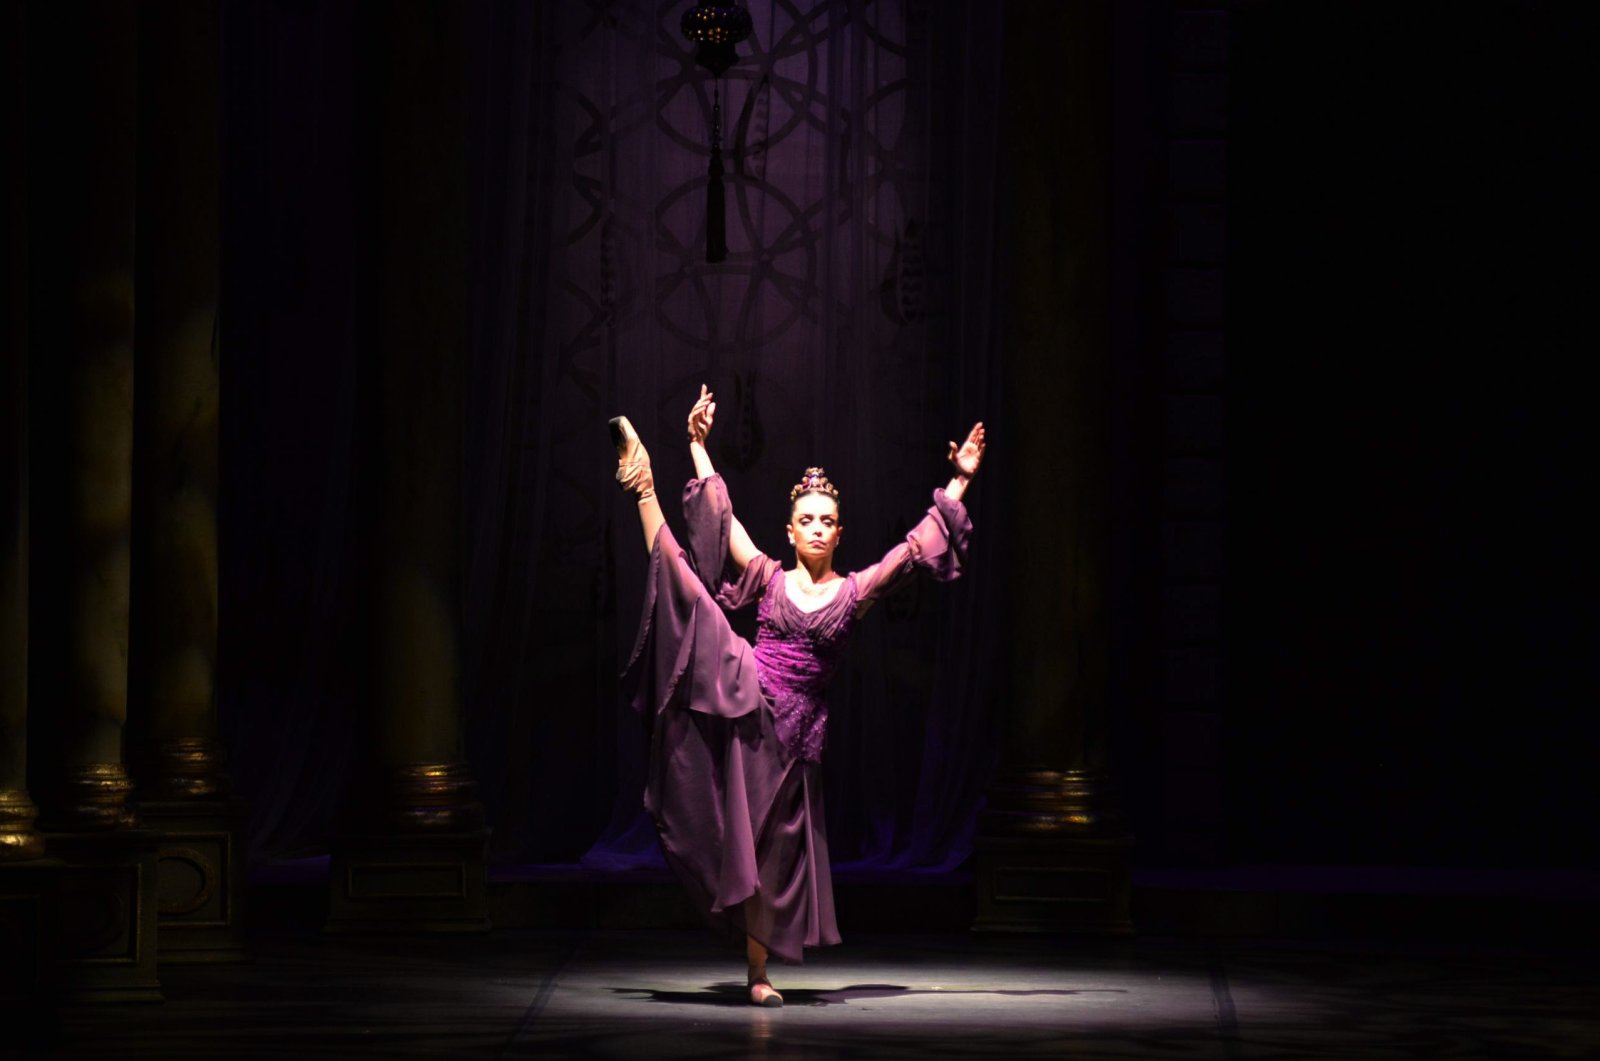 Pertunjukan perdana balet yang menggambarkan kehidupan ratu Ottoman Hürrem yang terkenal